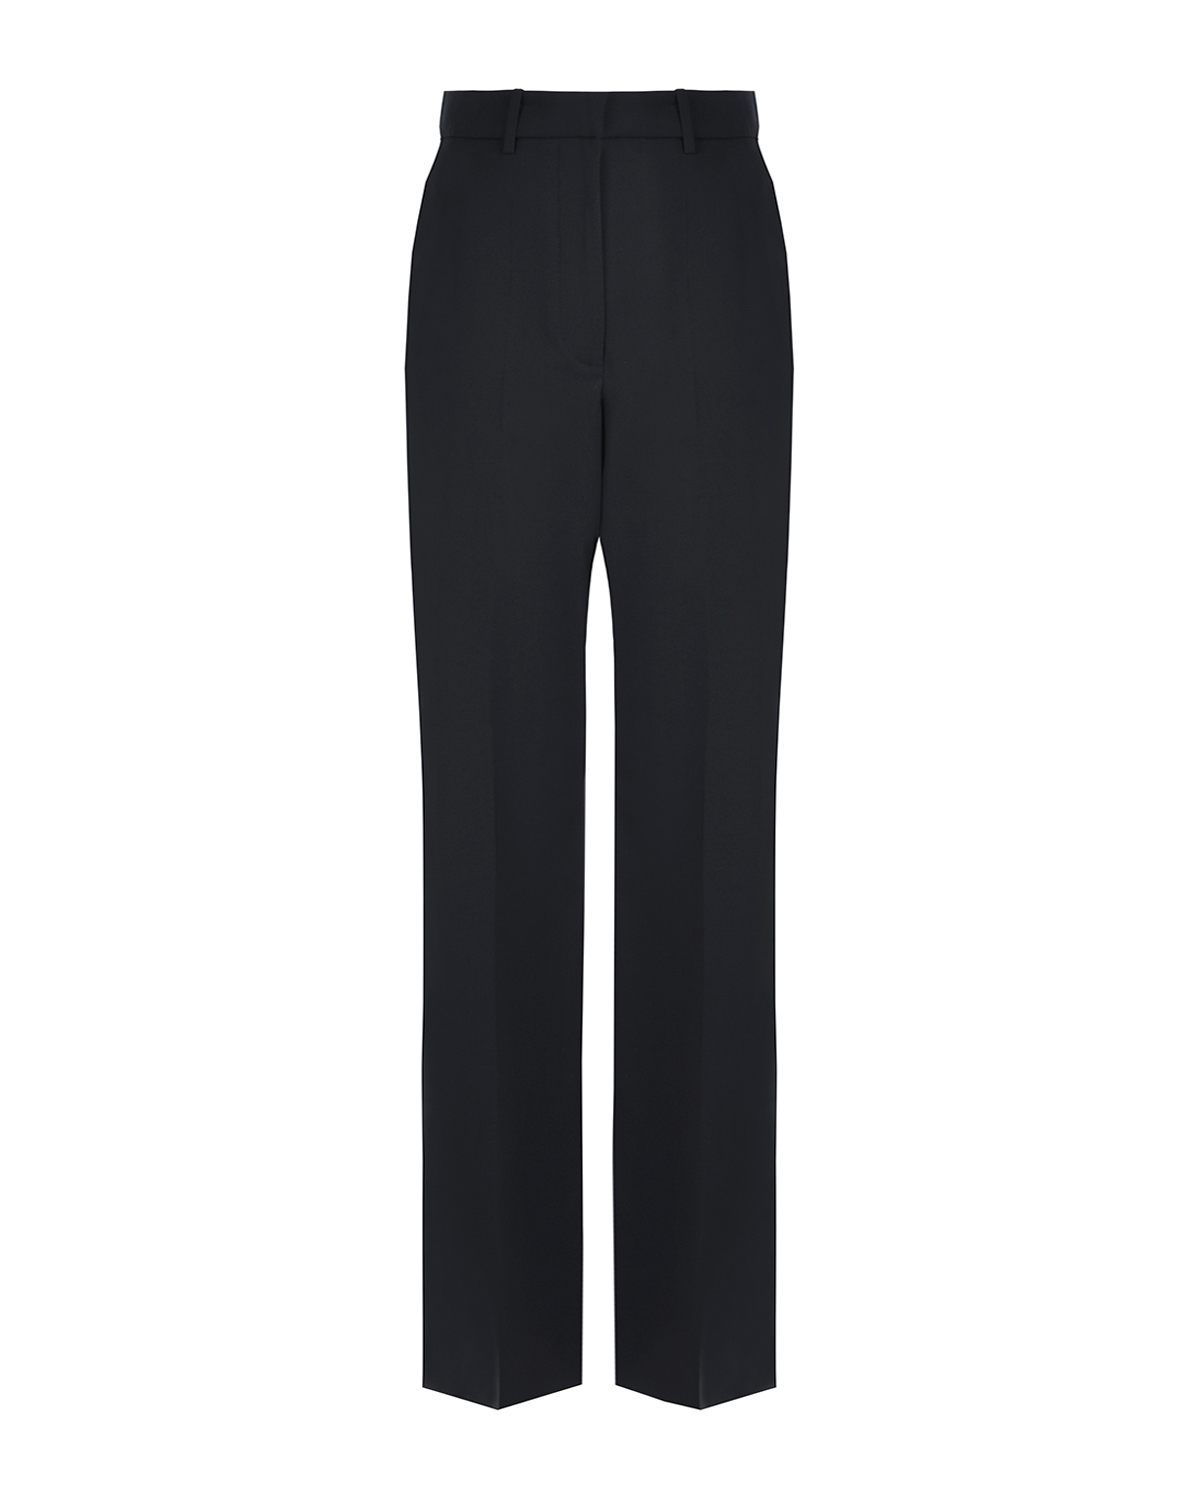 Черные брюки из шерсти Joseph, размер 40, цвет черный - фото 1